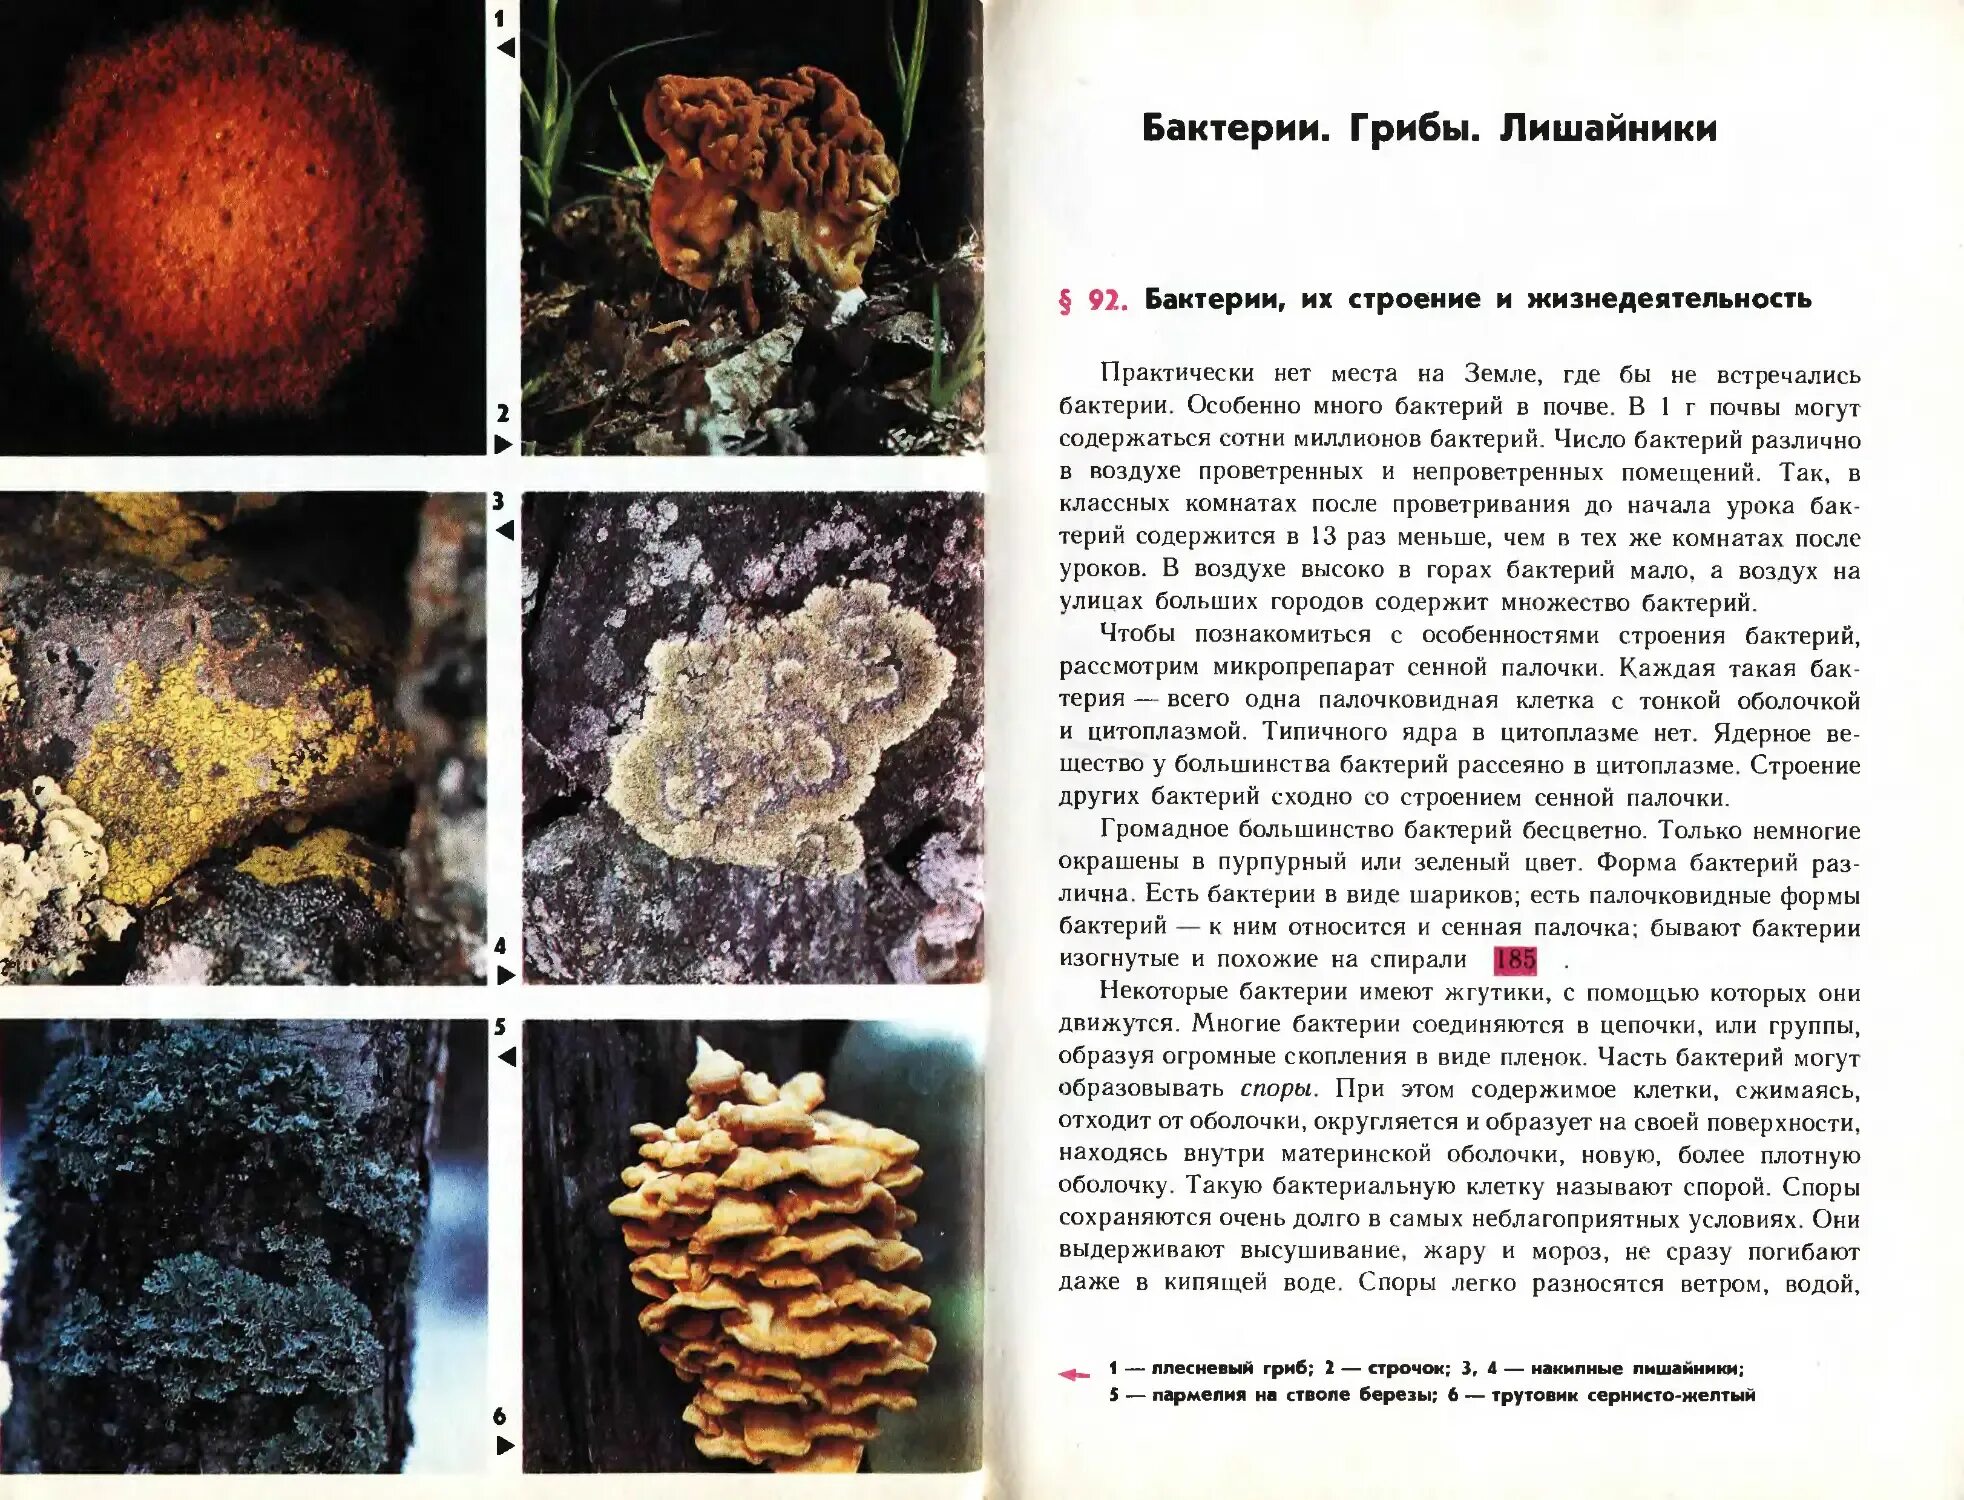 Почему лишайники грибы. Бактерии грибы лишайники. Грибы и бактерии. Бактерии грибы лишайники таблица. Бактерии грибы лишайники сравнительная таблица.